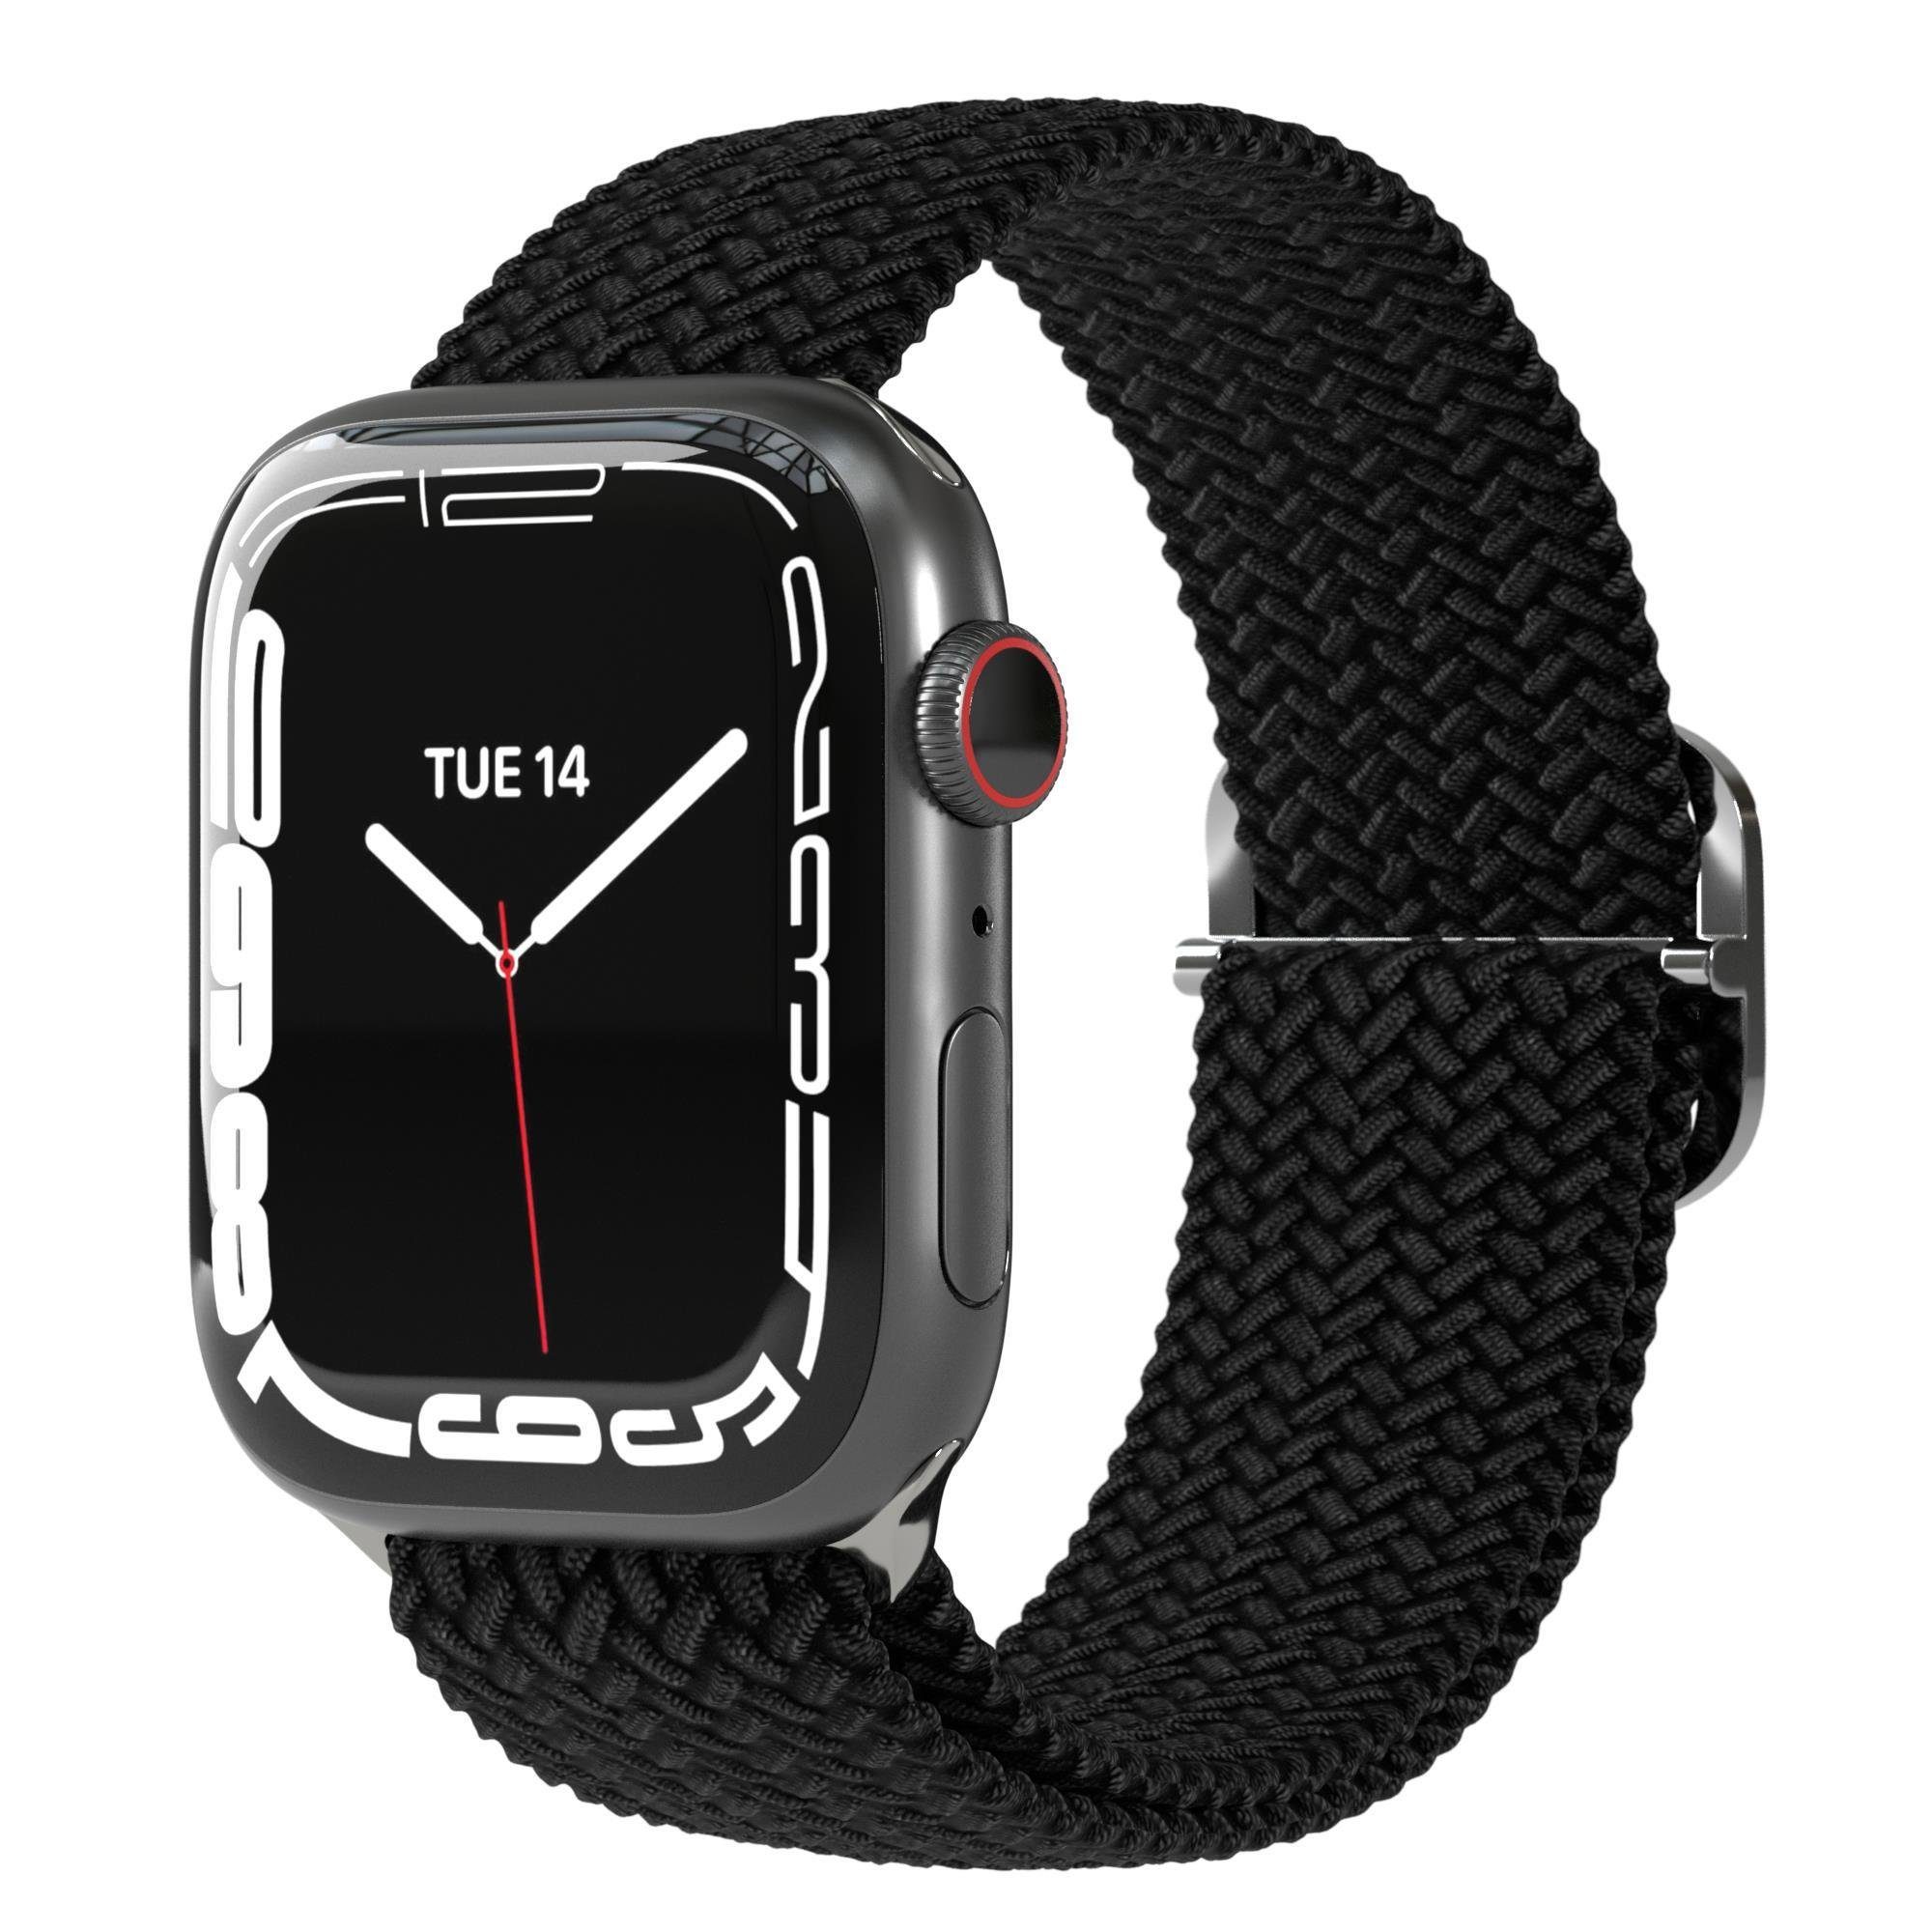 Uhrenarmband Unisex 9 6 Apple Schwarz 8 SE 7 Fitnessband iWatch elastisch 2 1 5 44mm 49mm EAZY 45mm Flechtband 42mm 3 4 Watch für Ultra, CASE